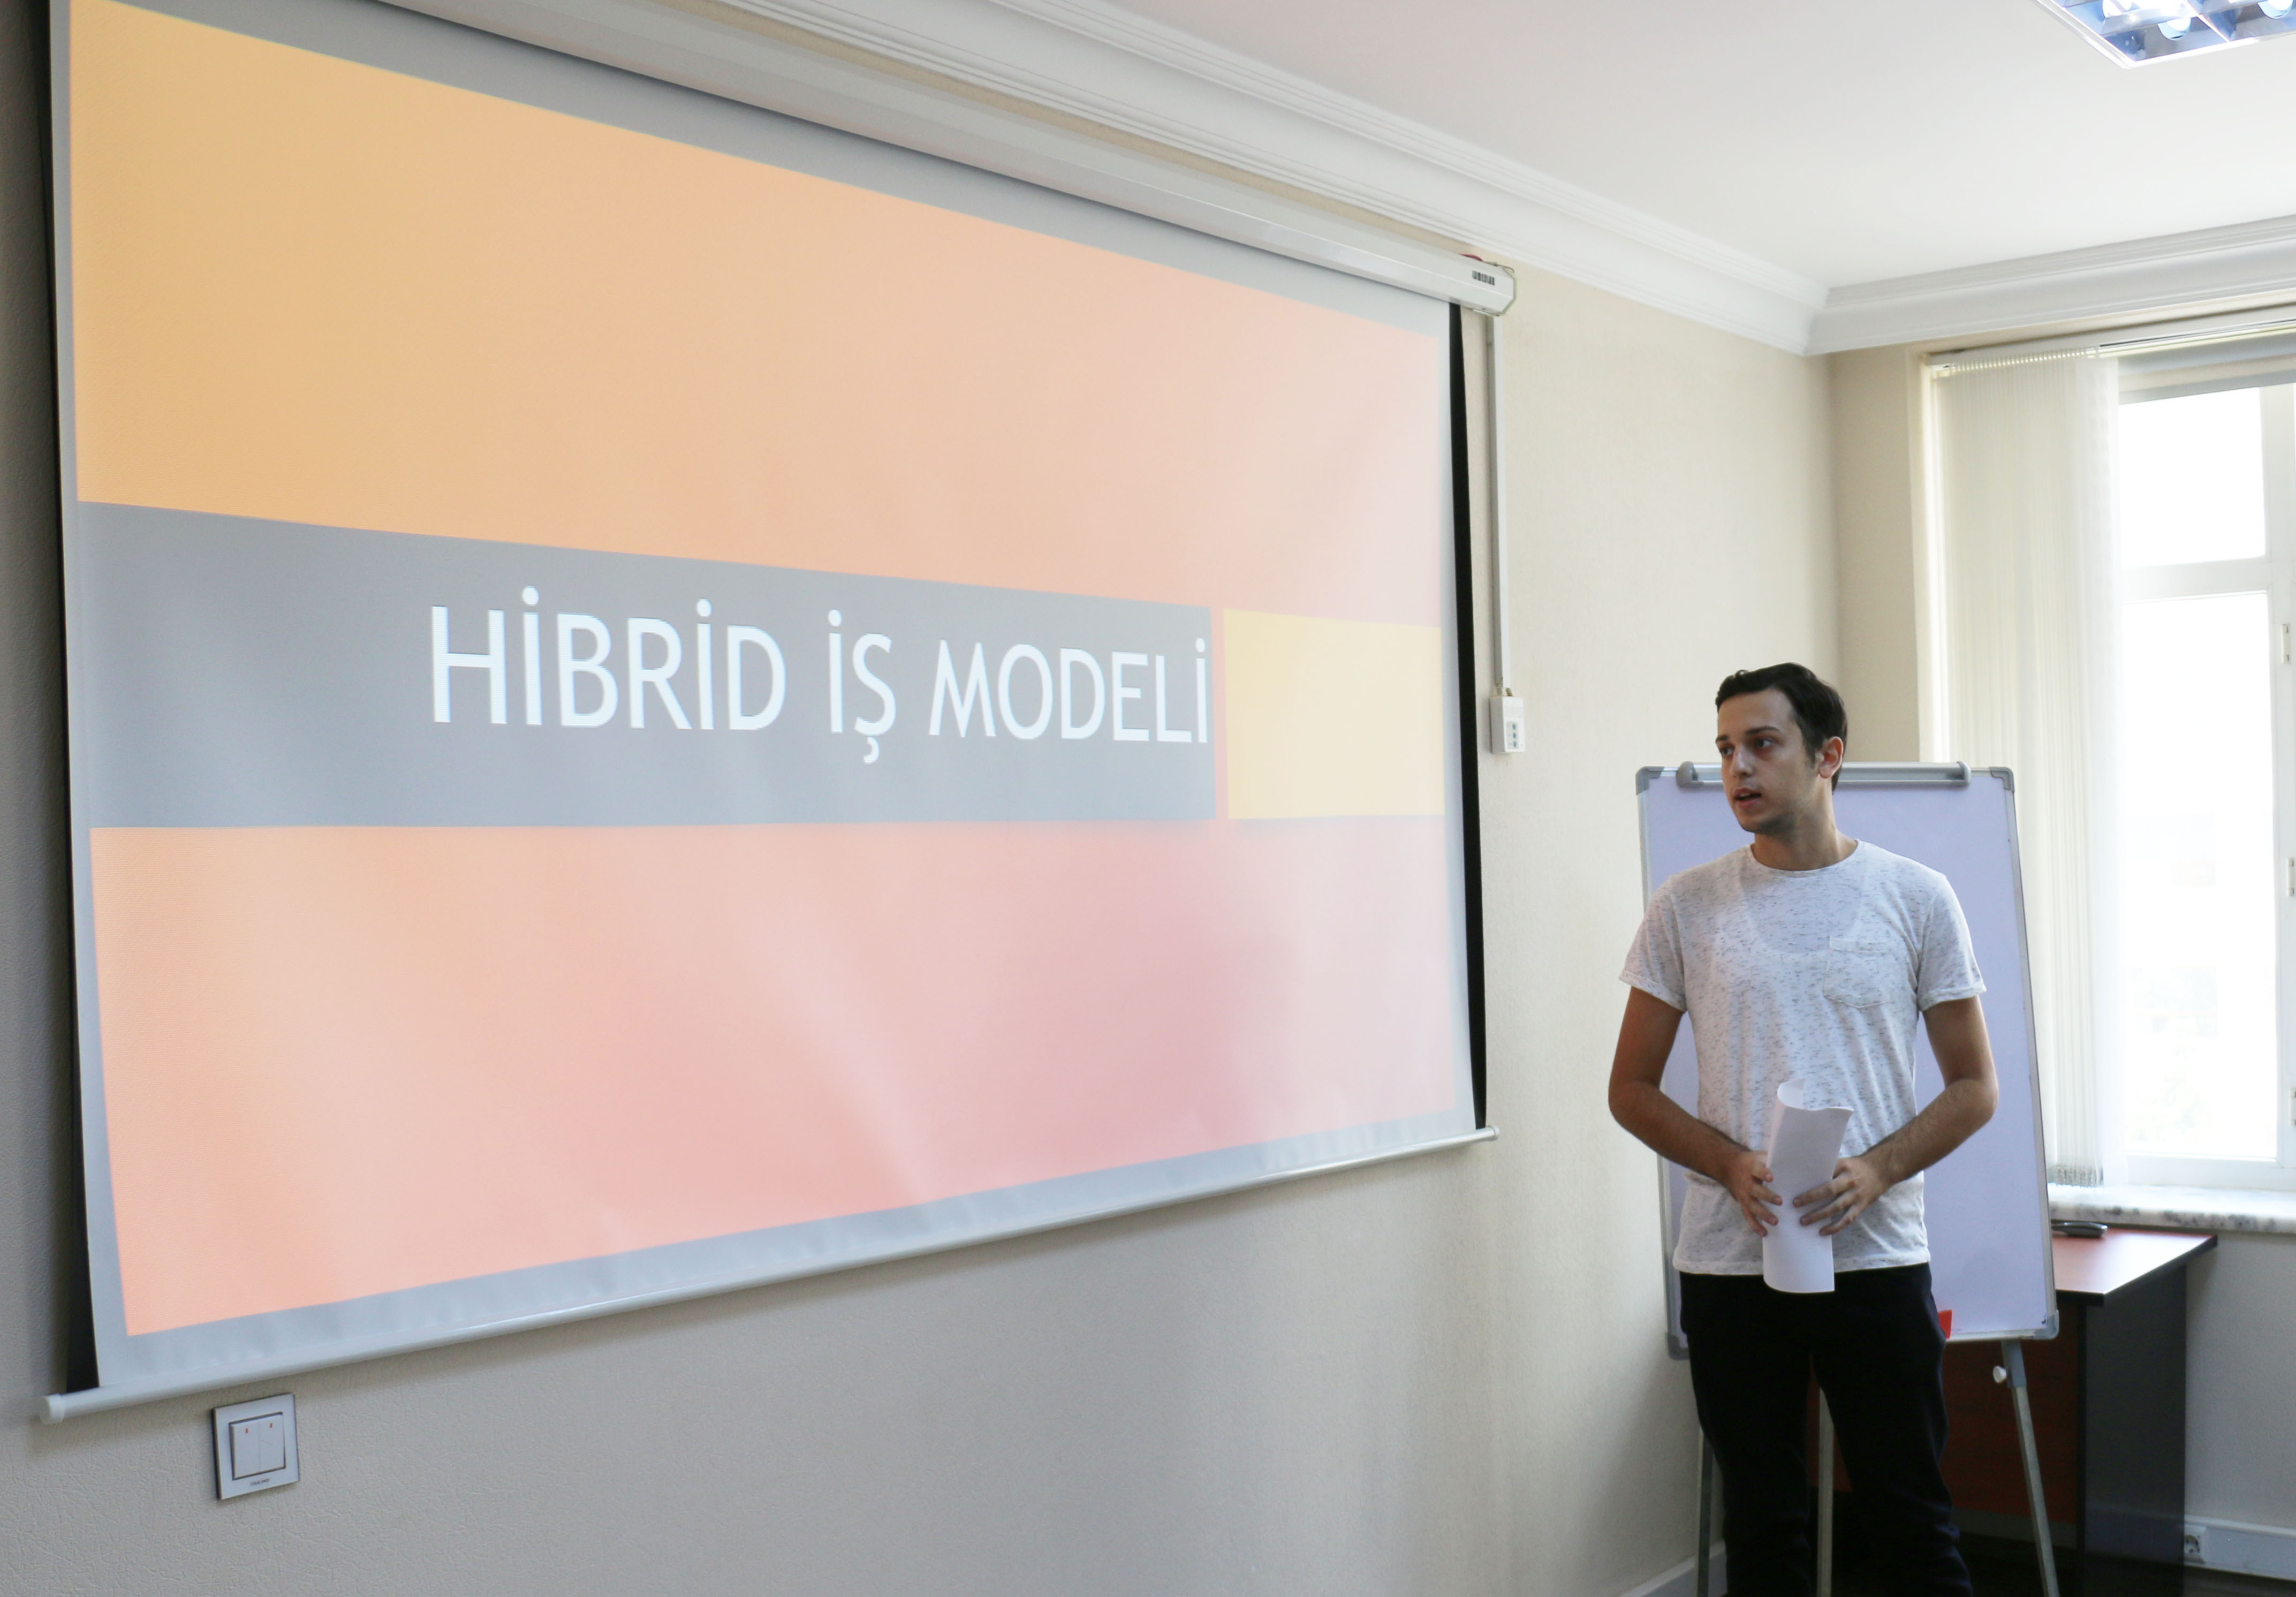 Hybrid work model